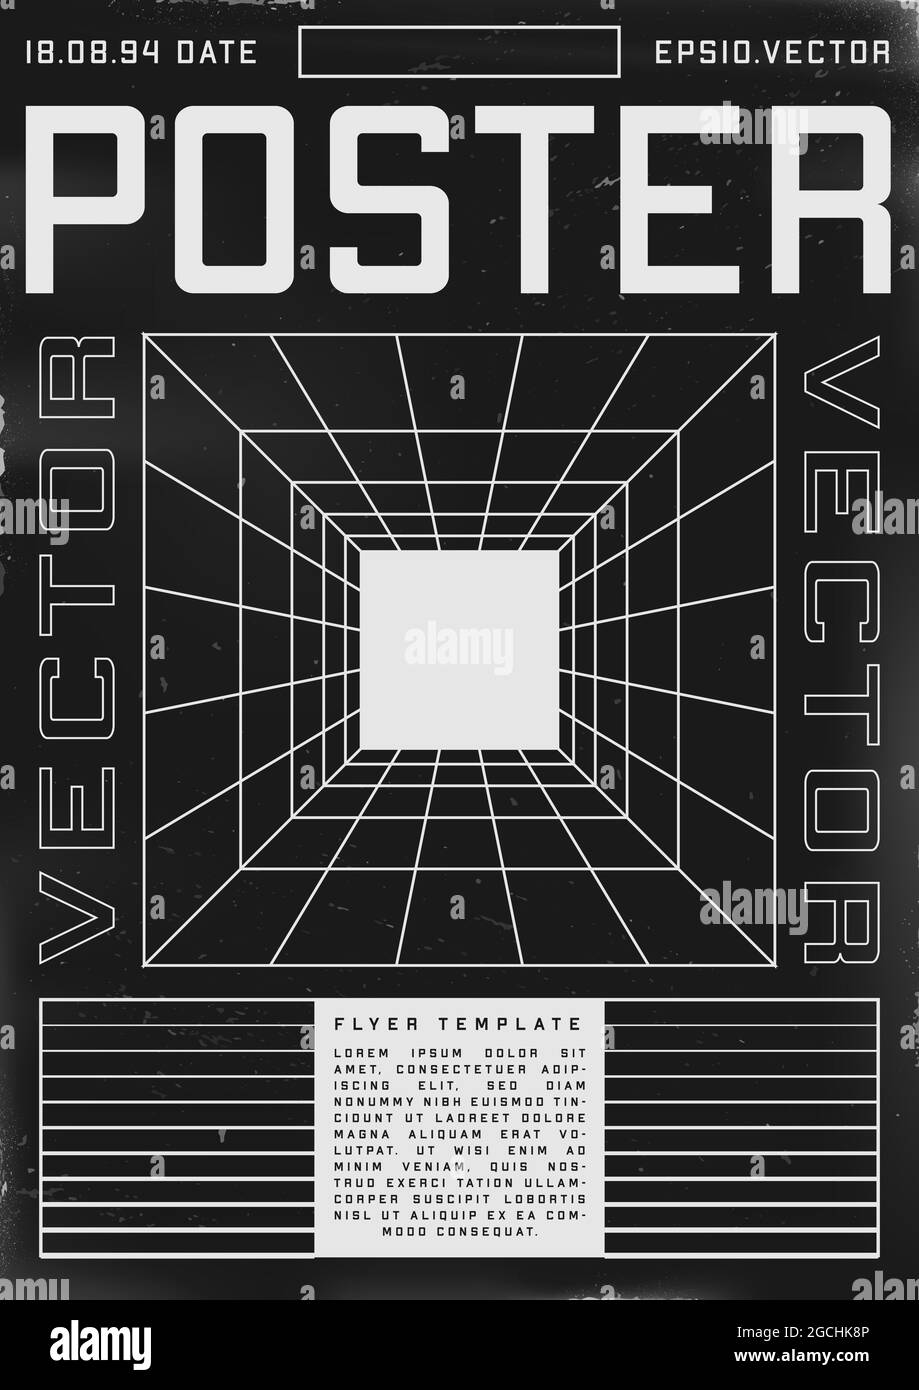 Poster dal design retrovuturistico con tunnel a griglia in prospettiva. Poster in stile cyberpunk anni '80 con tunnel e luce alla fine. Volantino graffiato shabby Illustrazione Vettoriale